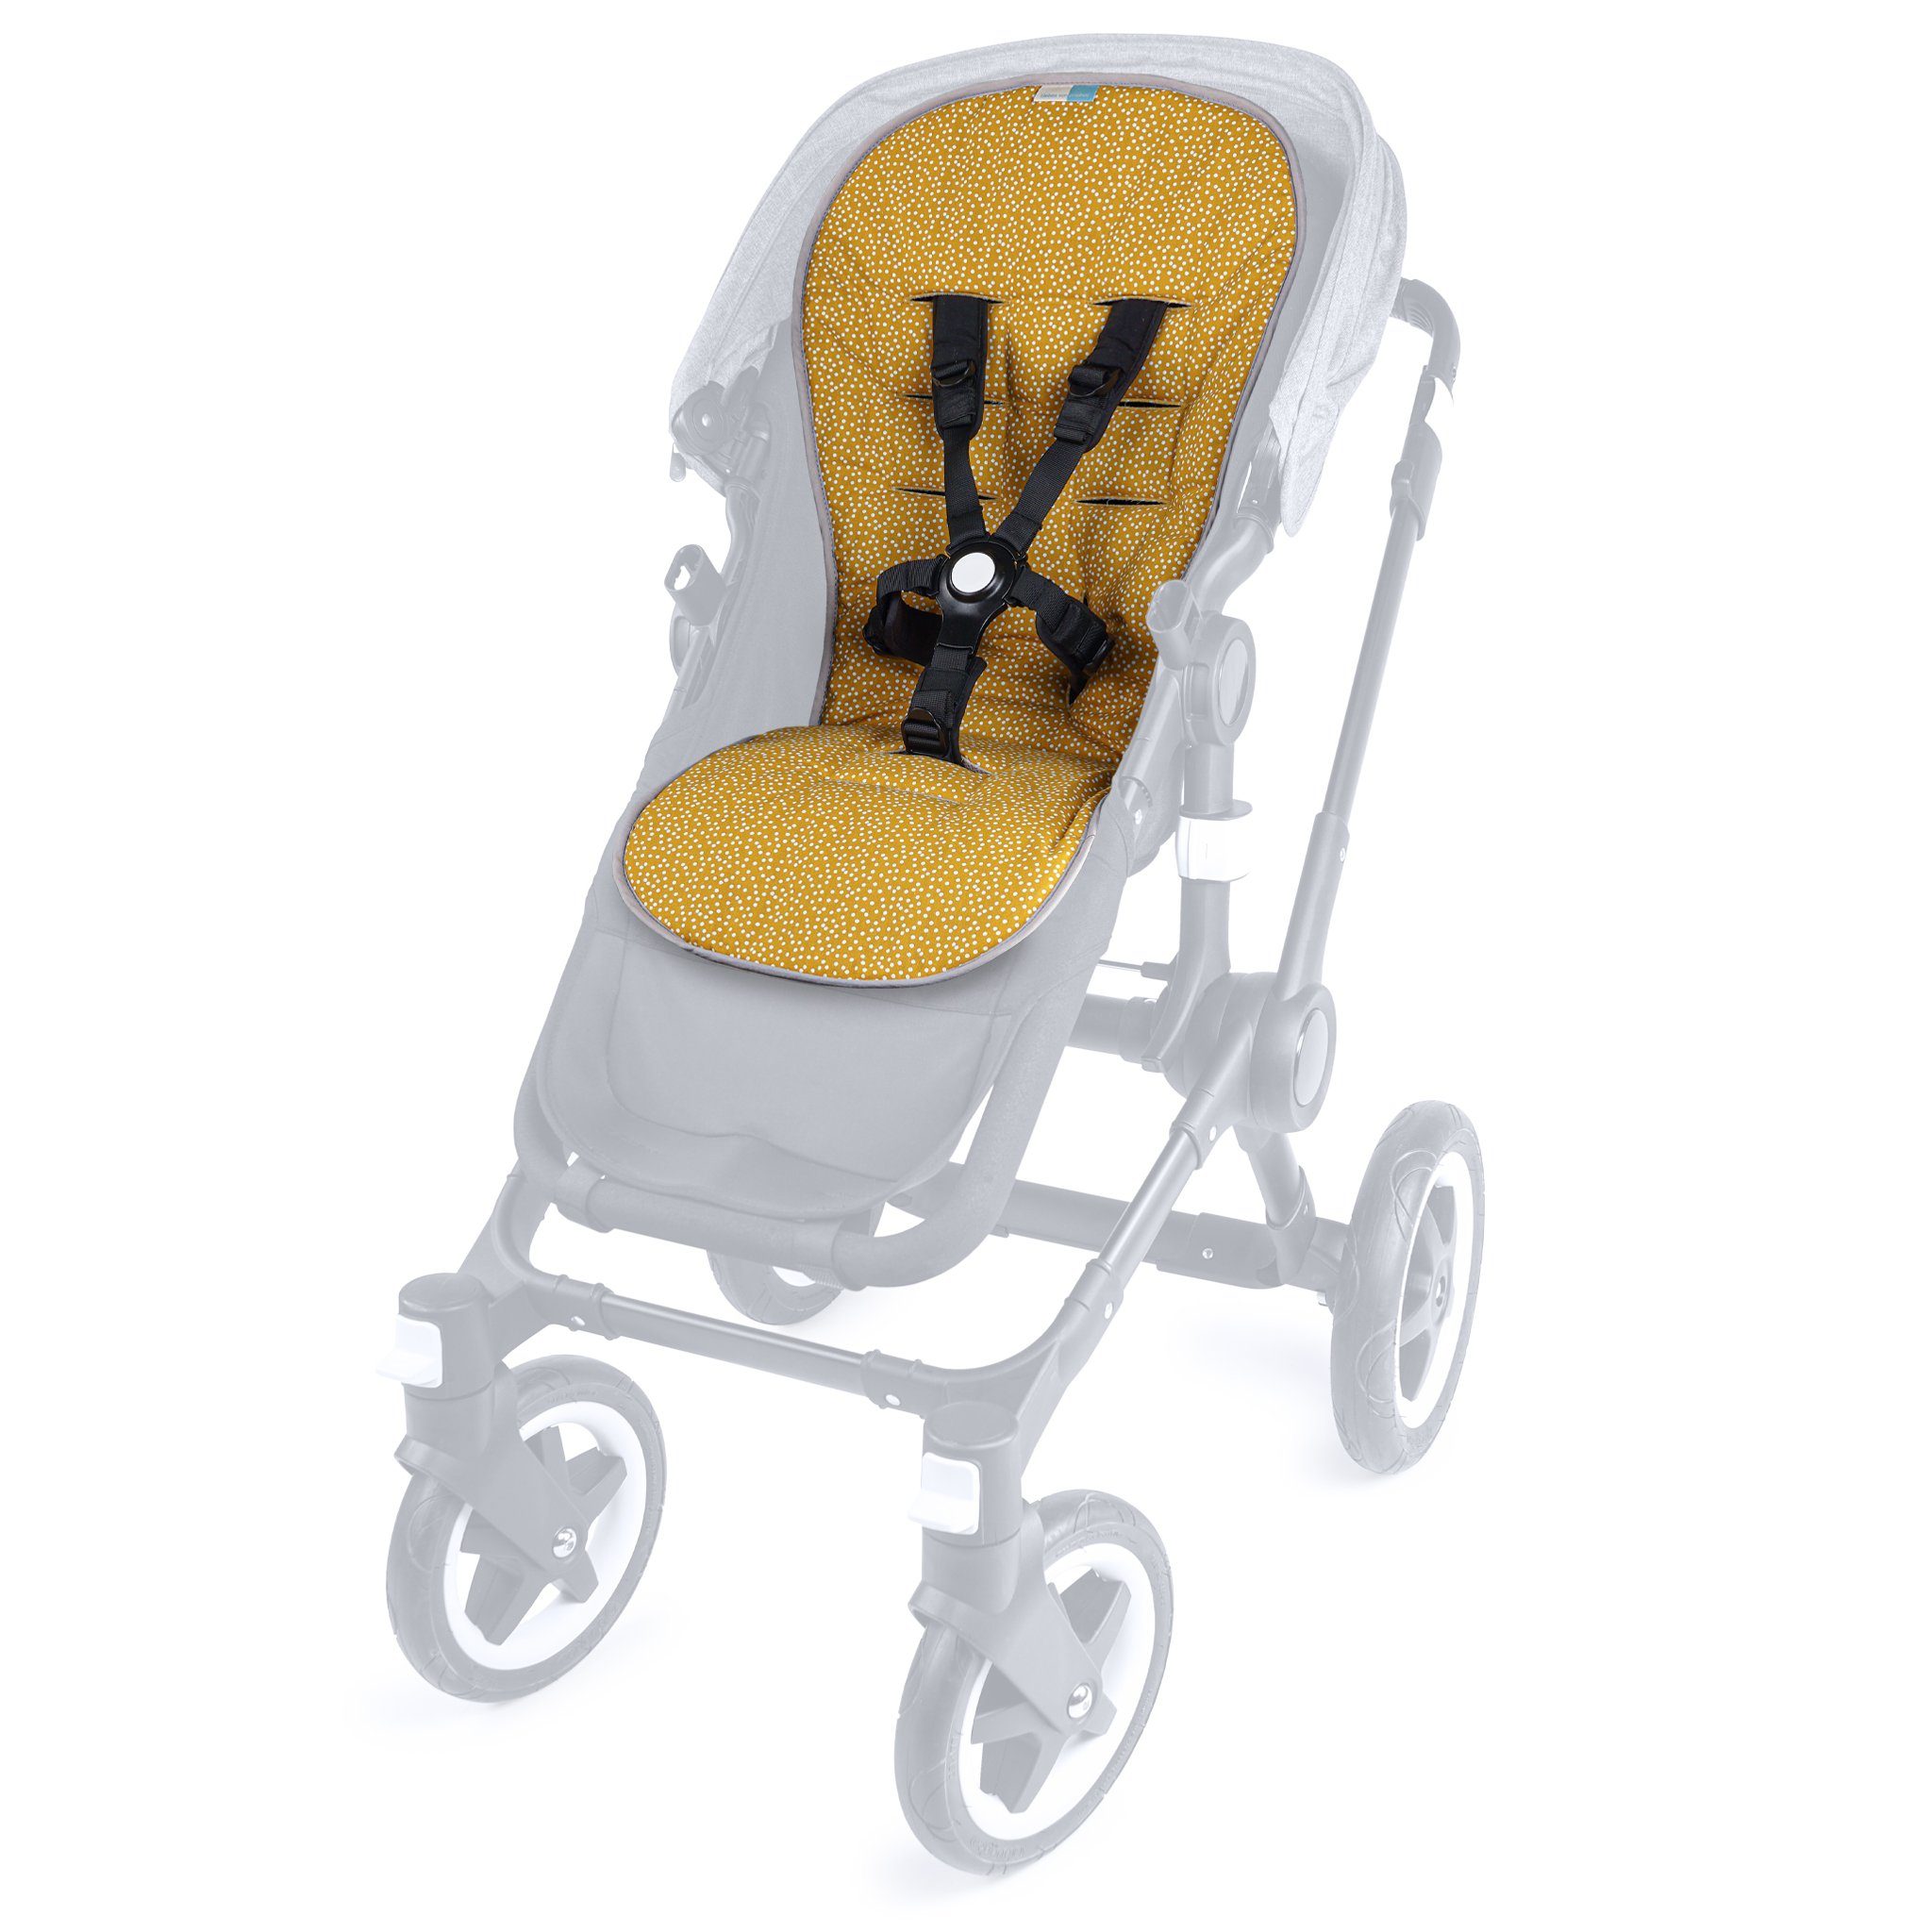 Liebes von priebes Kinderwagen-Sitzauflage Priebes Mia Coolair Funktionsitzauflage für Kinderwagen und Buggys